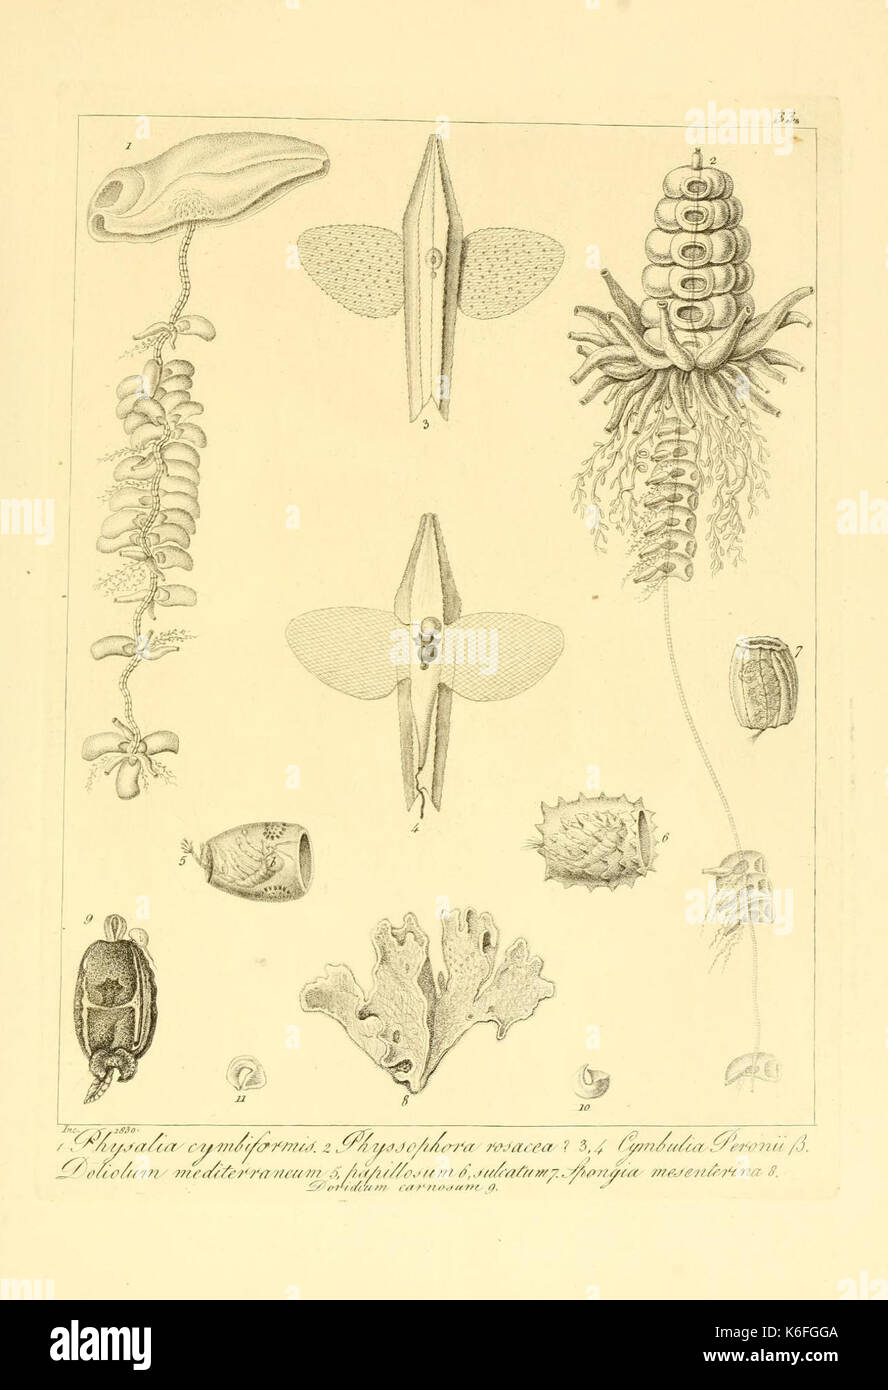 Beschreibung e notomia degli animali invertebrati della Sicilia citeriore (Platte 33) (9348918391) Stockfoto